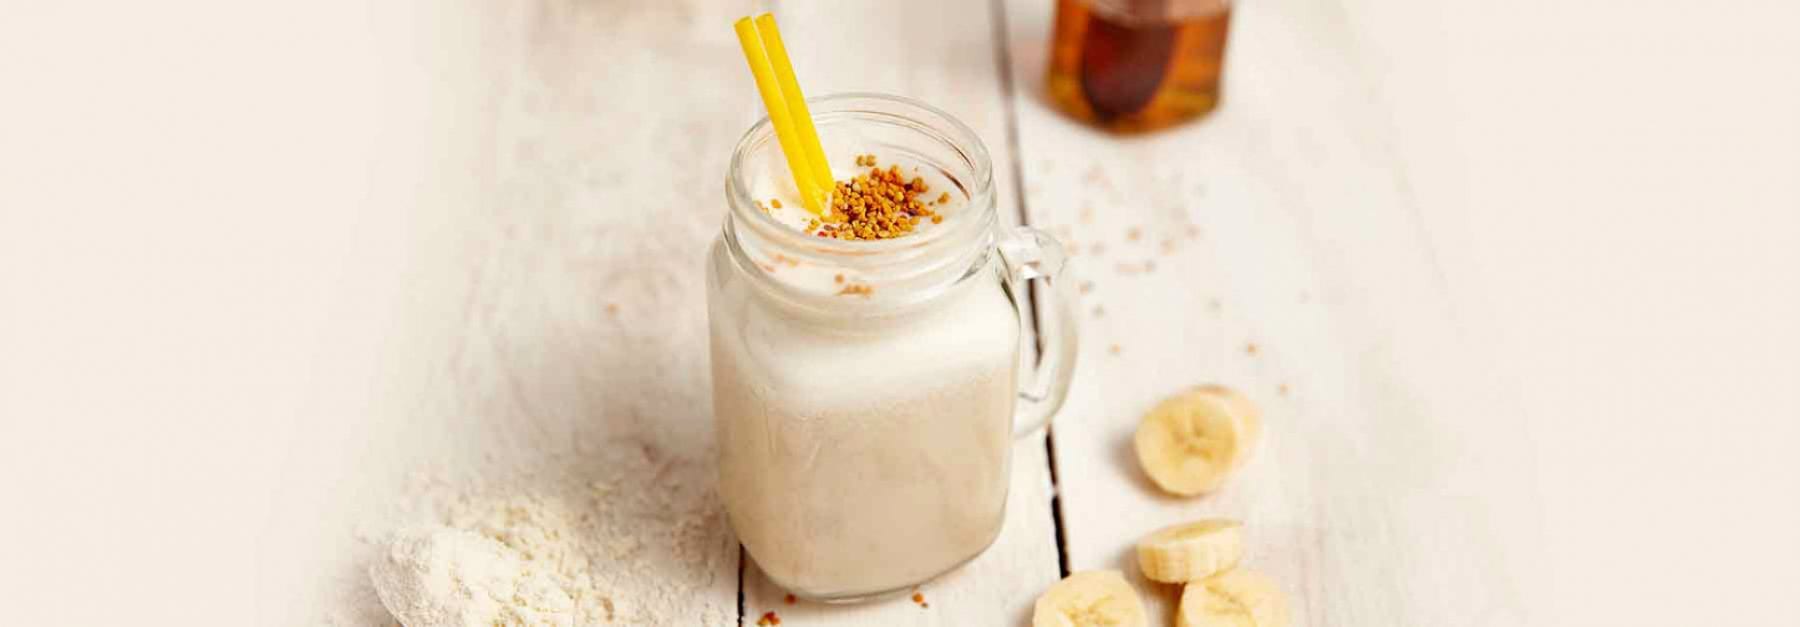 Honey & Banana Shake Recipe